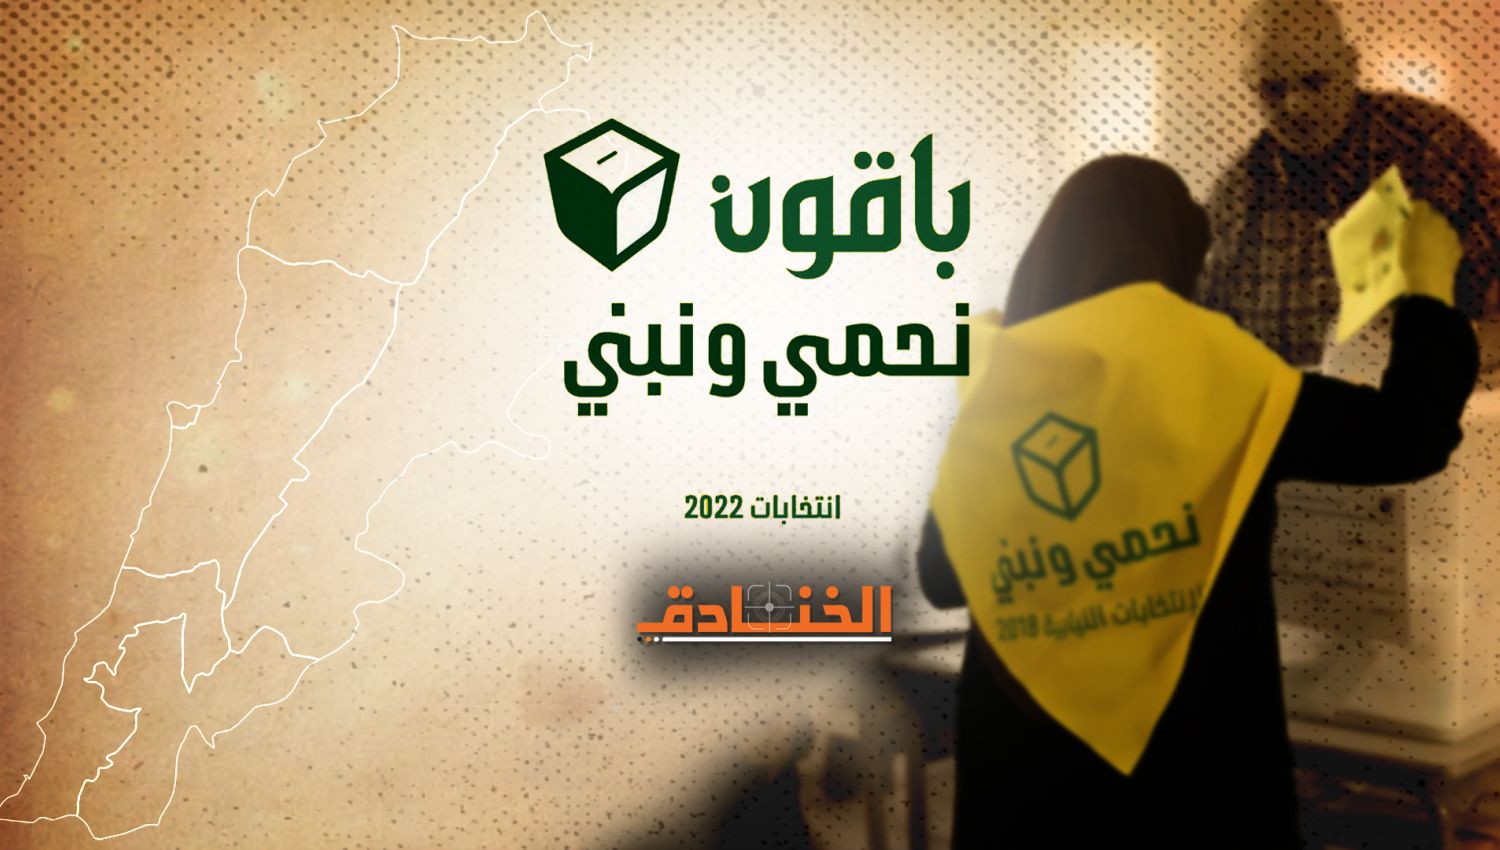 السيد نصر الله: لتجديد الثقة بمبادئ حزب الله الأولى